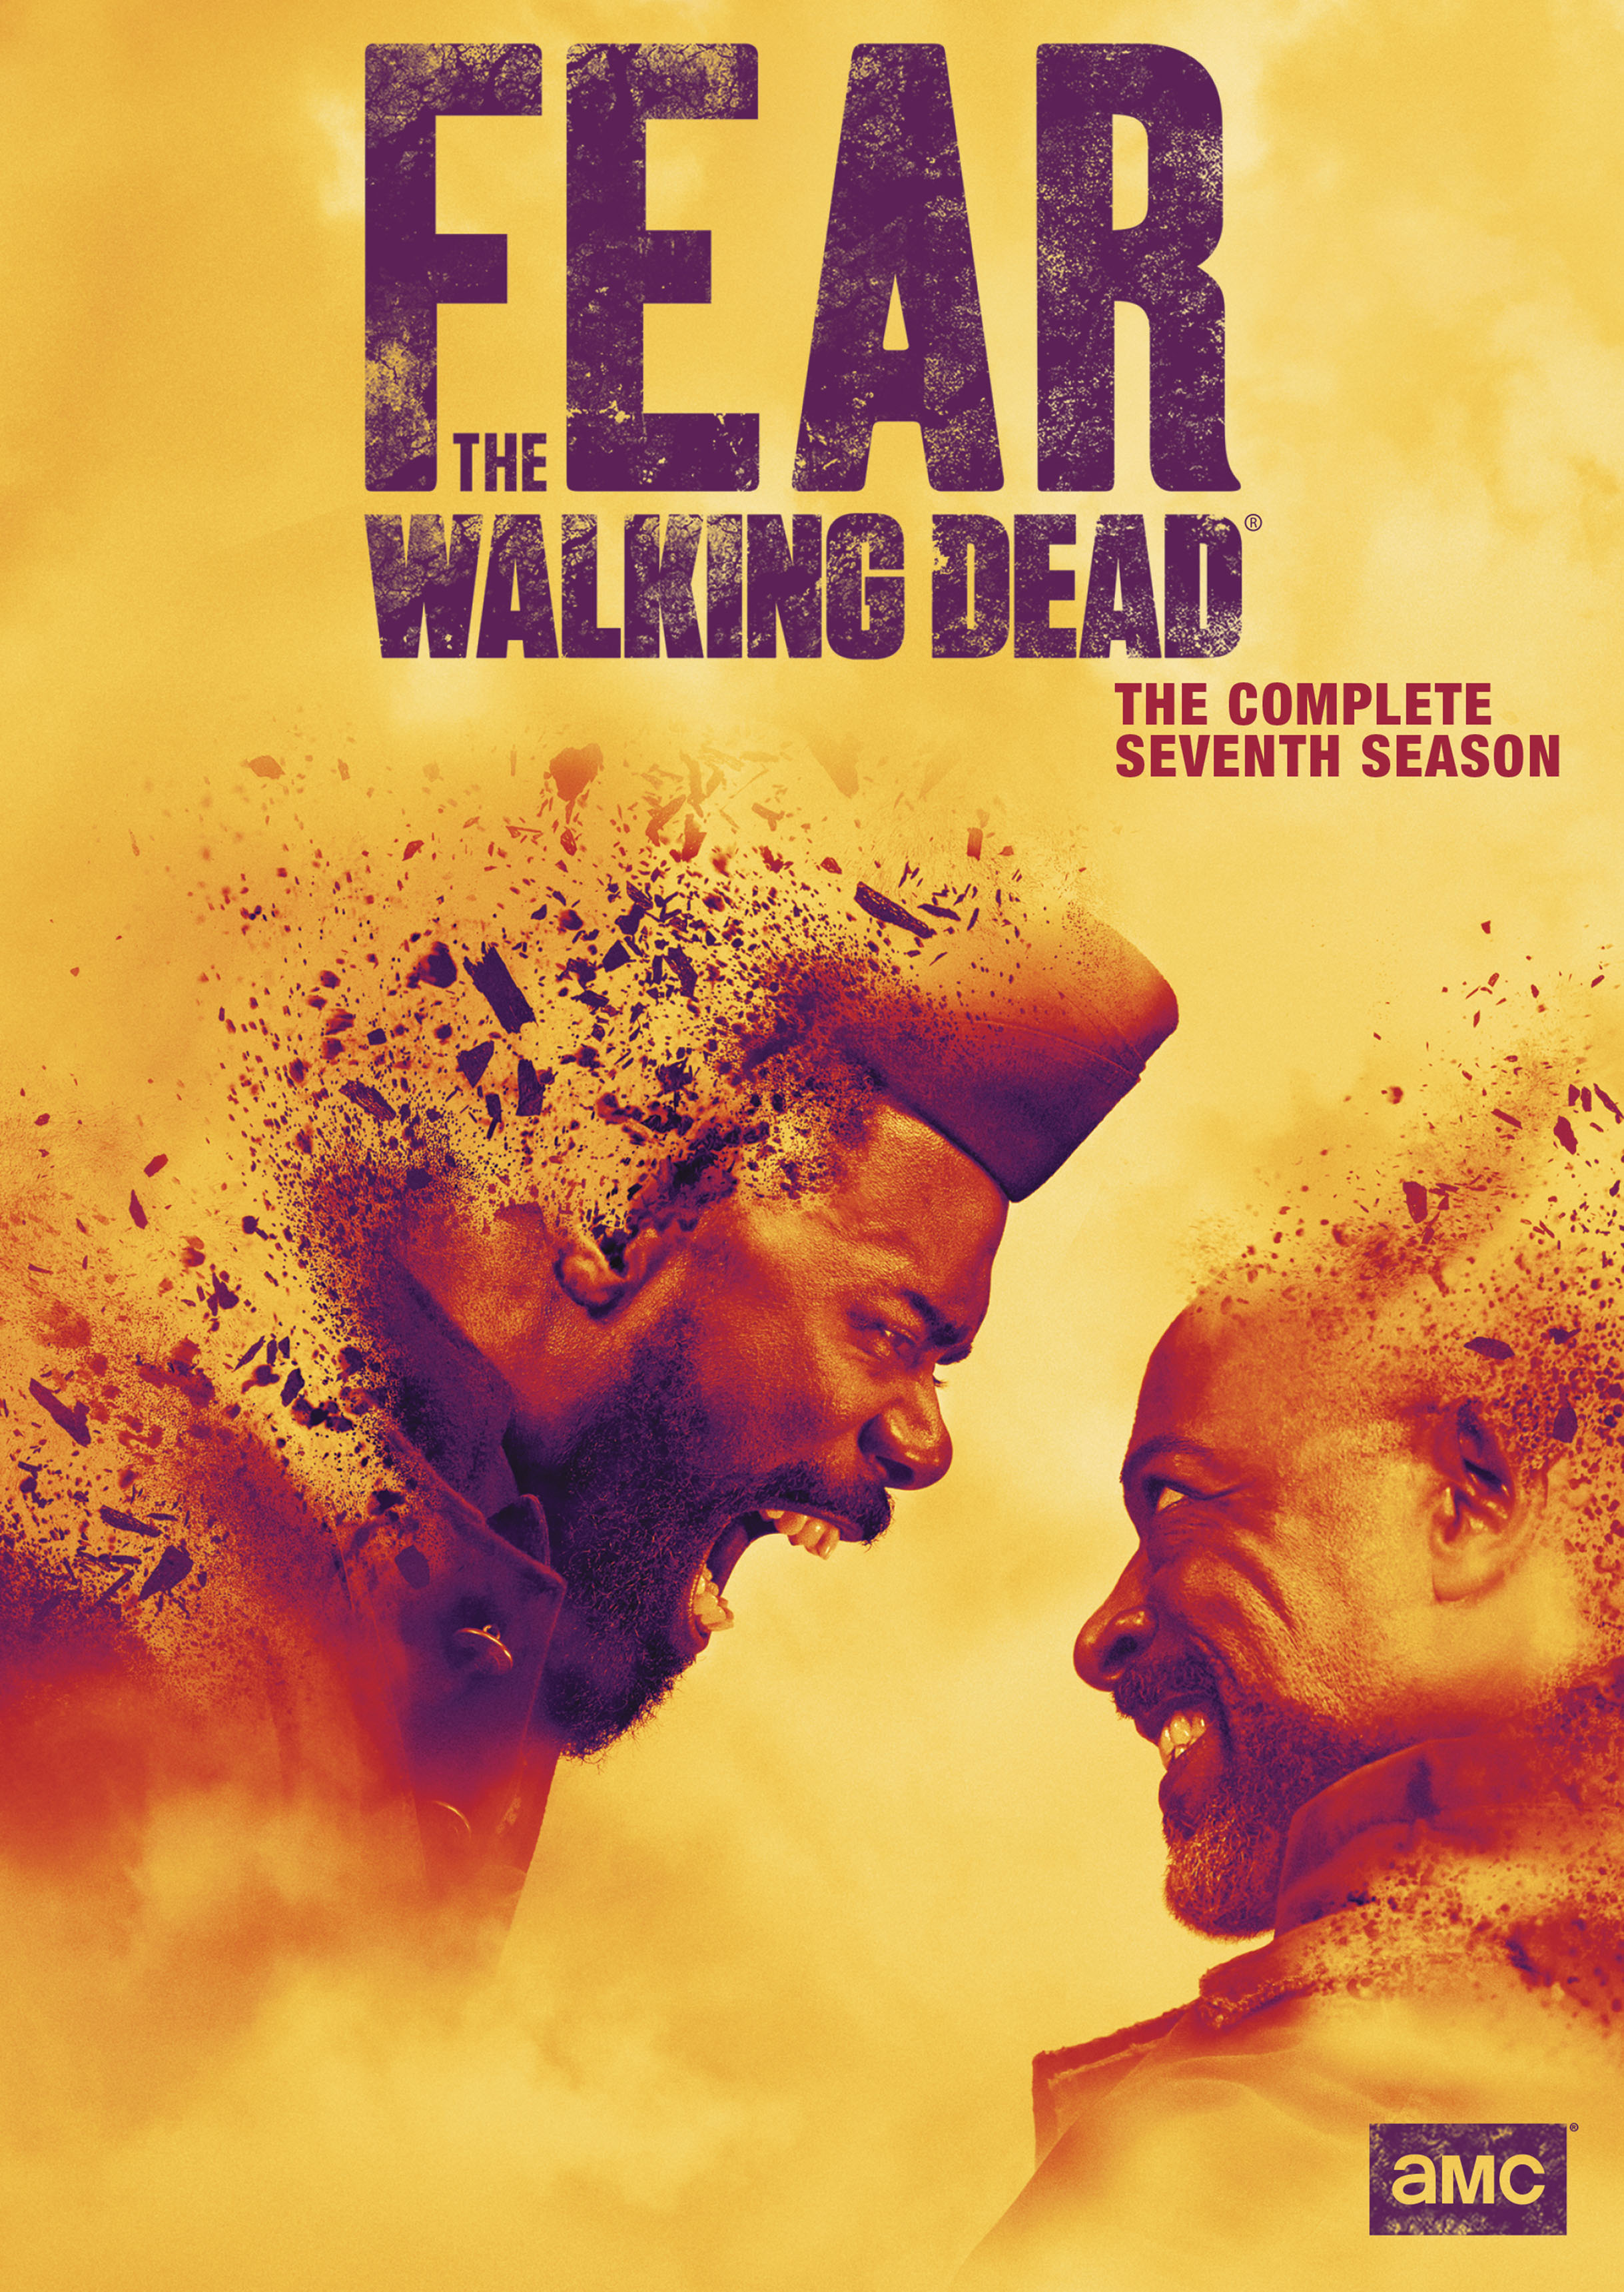 Walking Dead Poster